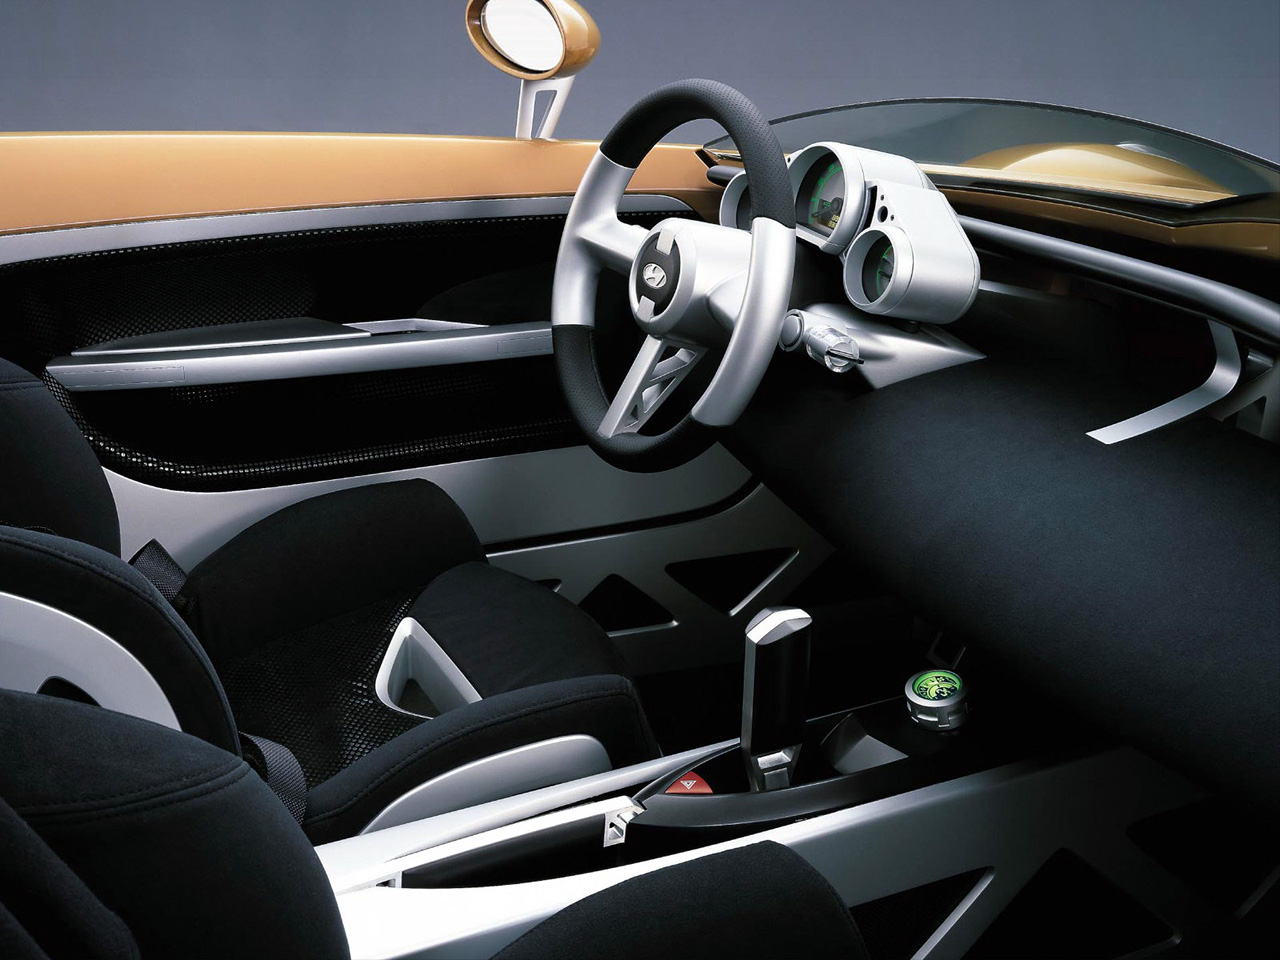 Hyundai NEOS Concept, 2000 - Interior